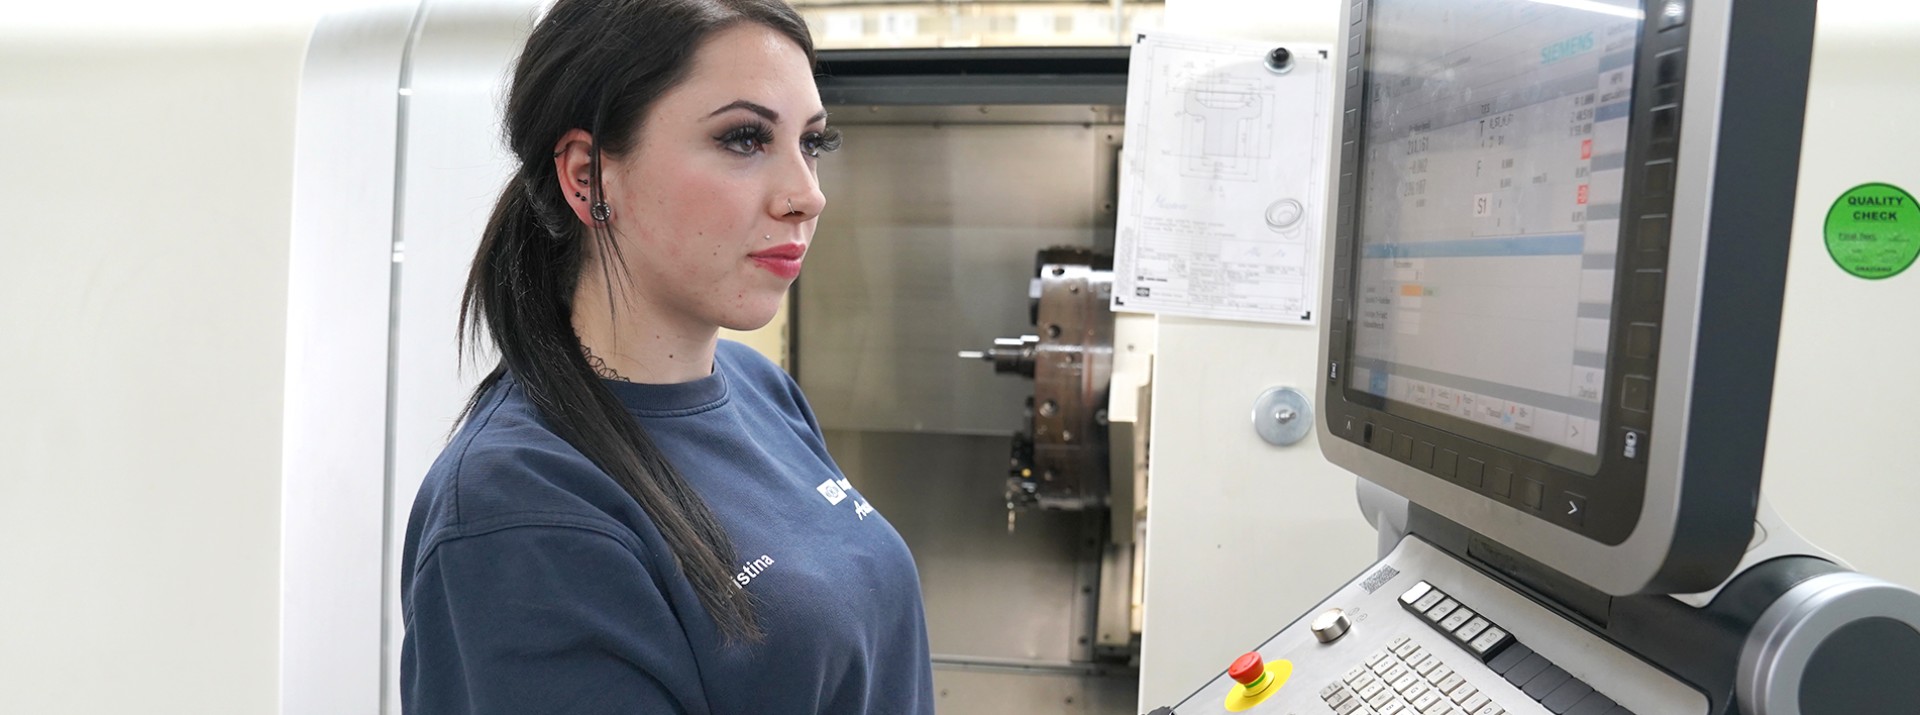 Kristina Bieder, Auszubildende bei Knorr-Bremse in Aldersbach, vor dem Bedienbildschirm einer Zerspanungsmaschine.